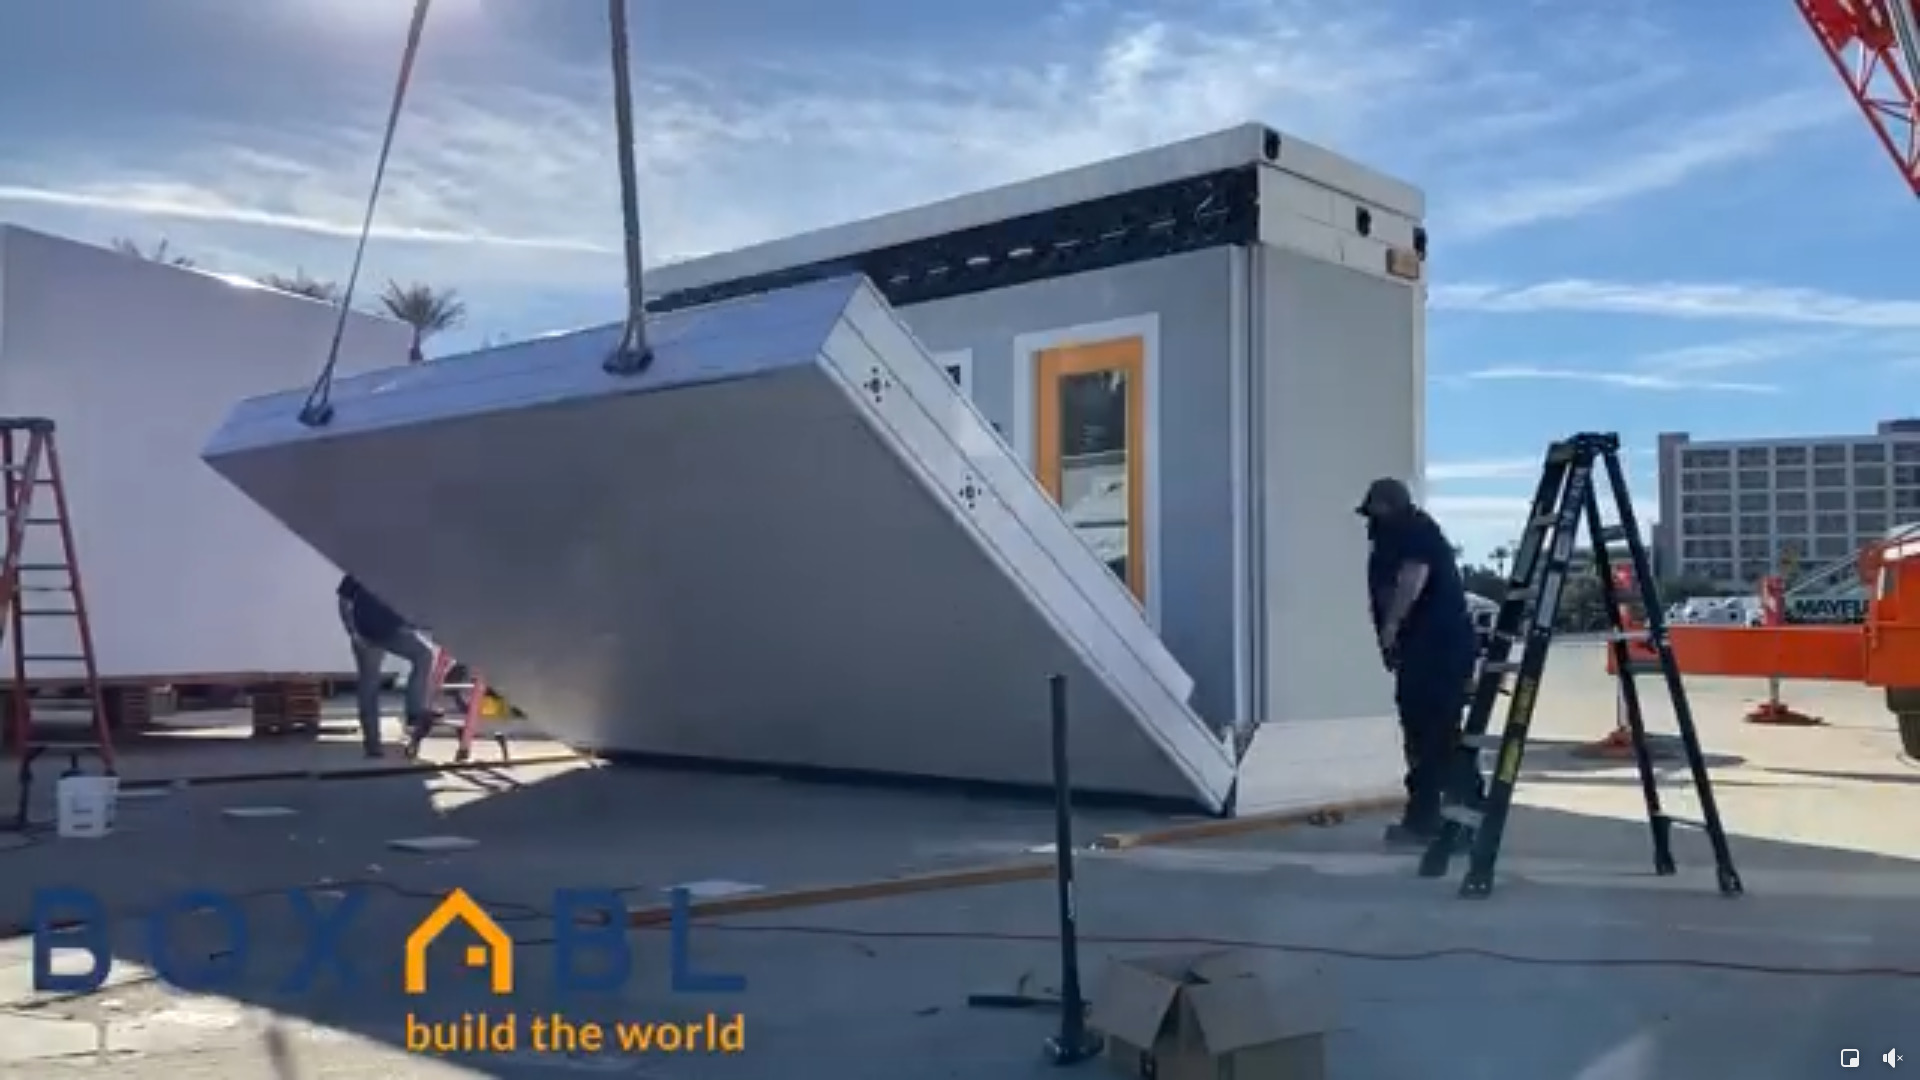 Boxabl จะใช้โรงงานแห่งใหม่ในลาสเวกัสสร้างบ้านพับได้ที่ลดต้นทุนและติดตั้งเร็ว